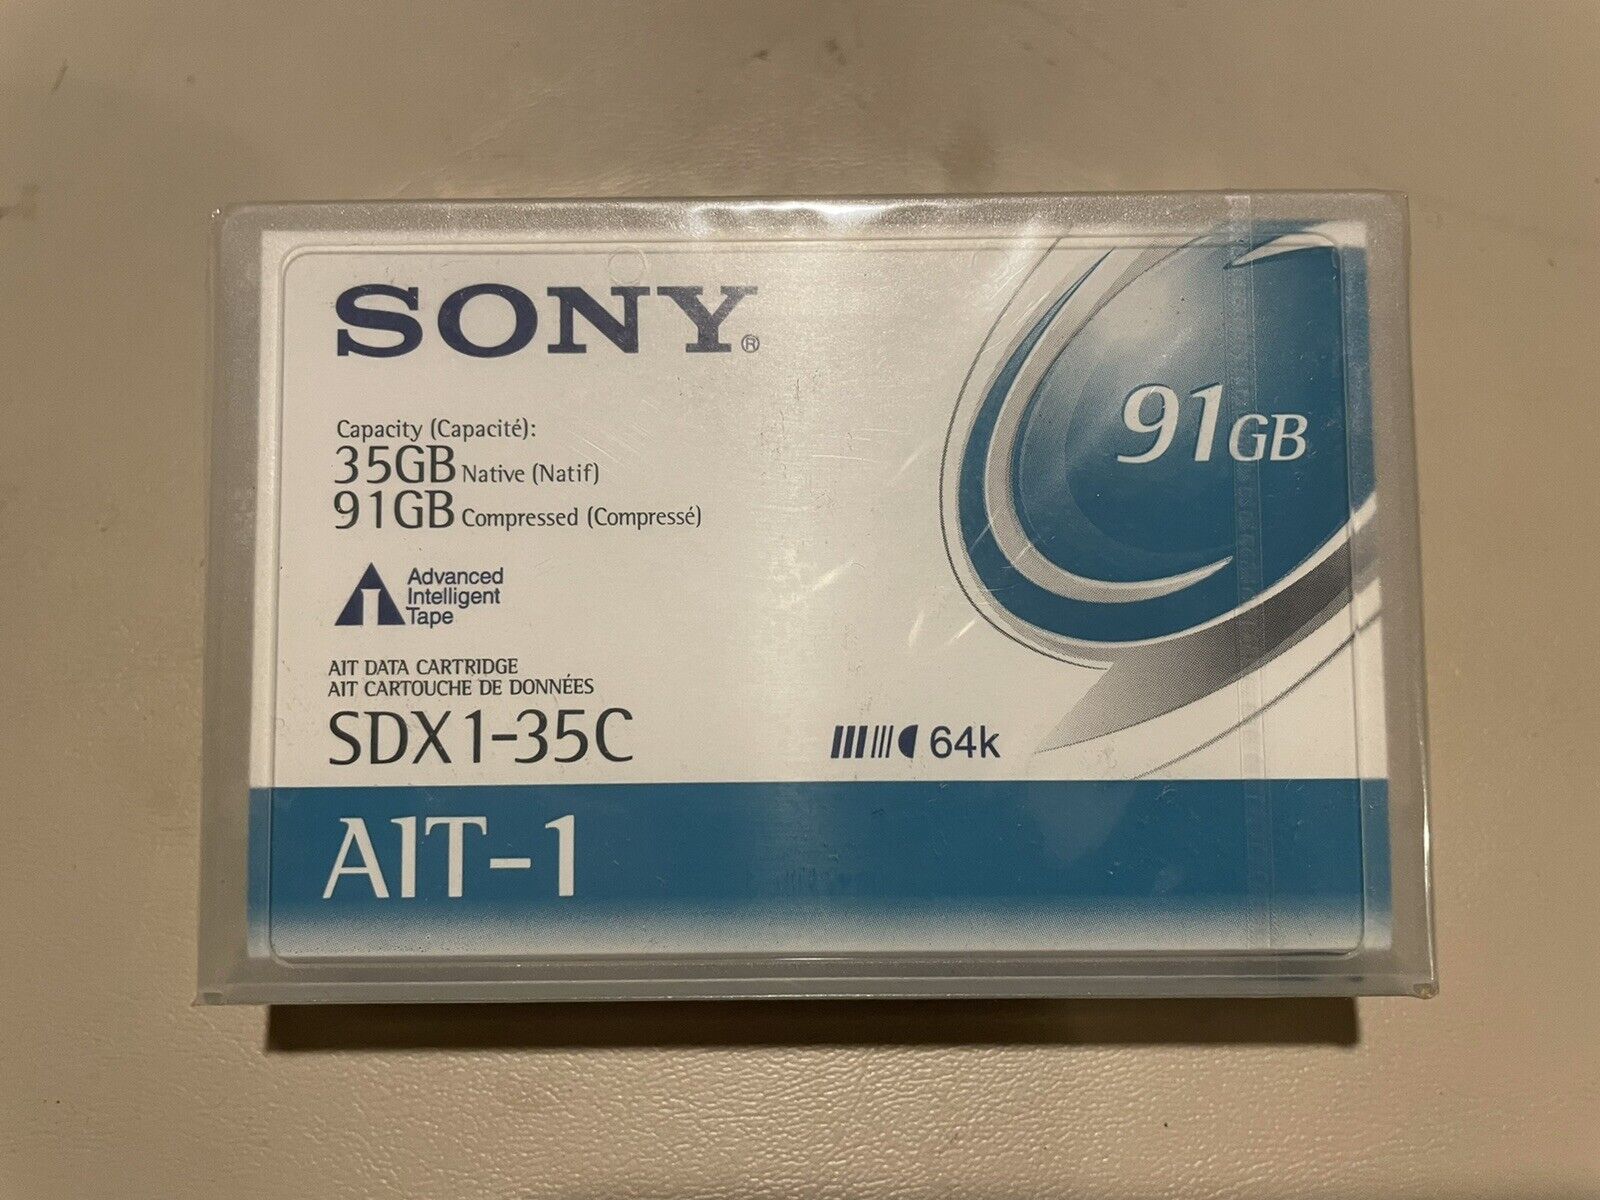 Sony Sdx1-35c Ait-1 Data Tape Cartridge 35gb/91gb New Sealed